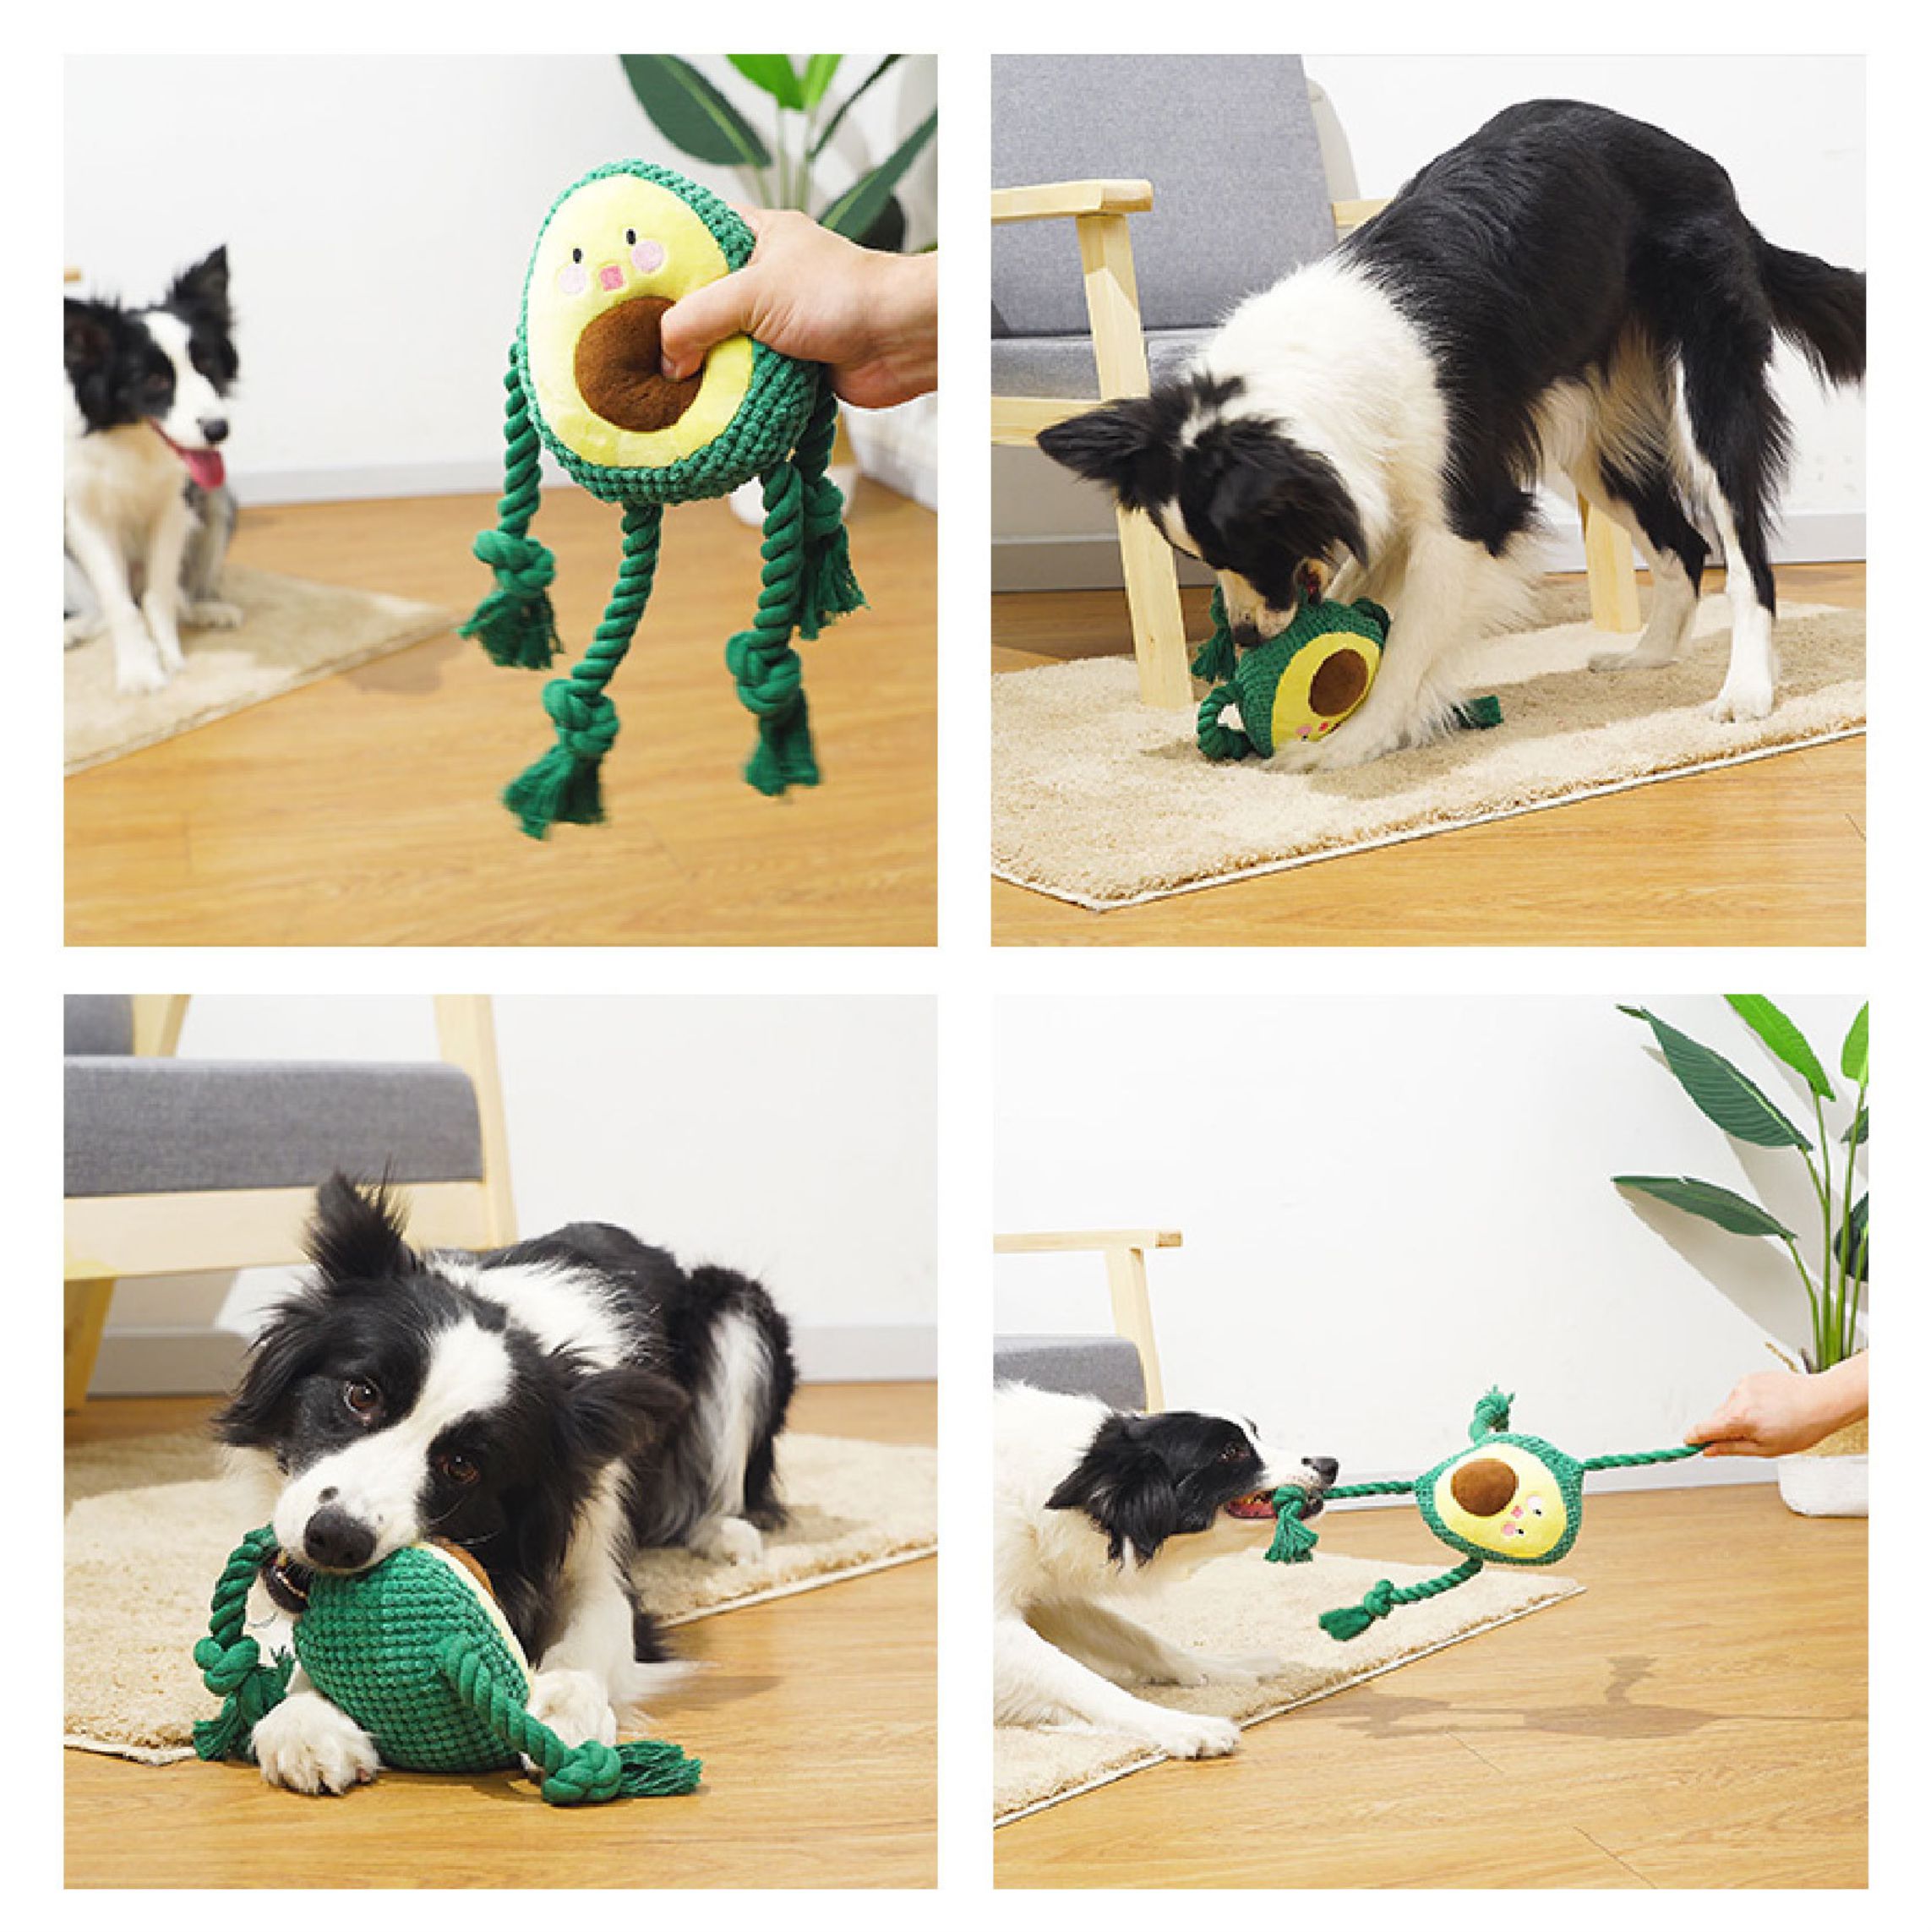 dog toy stuffed animals indestructible